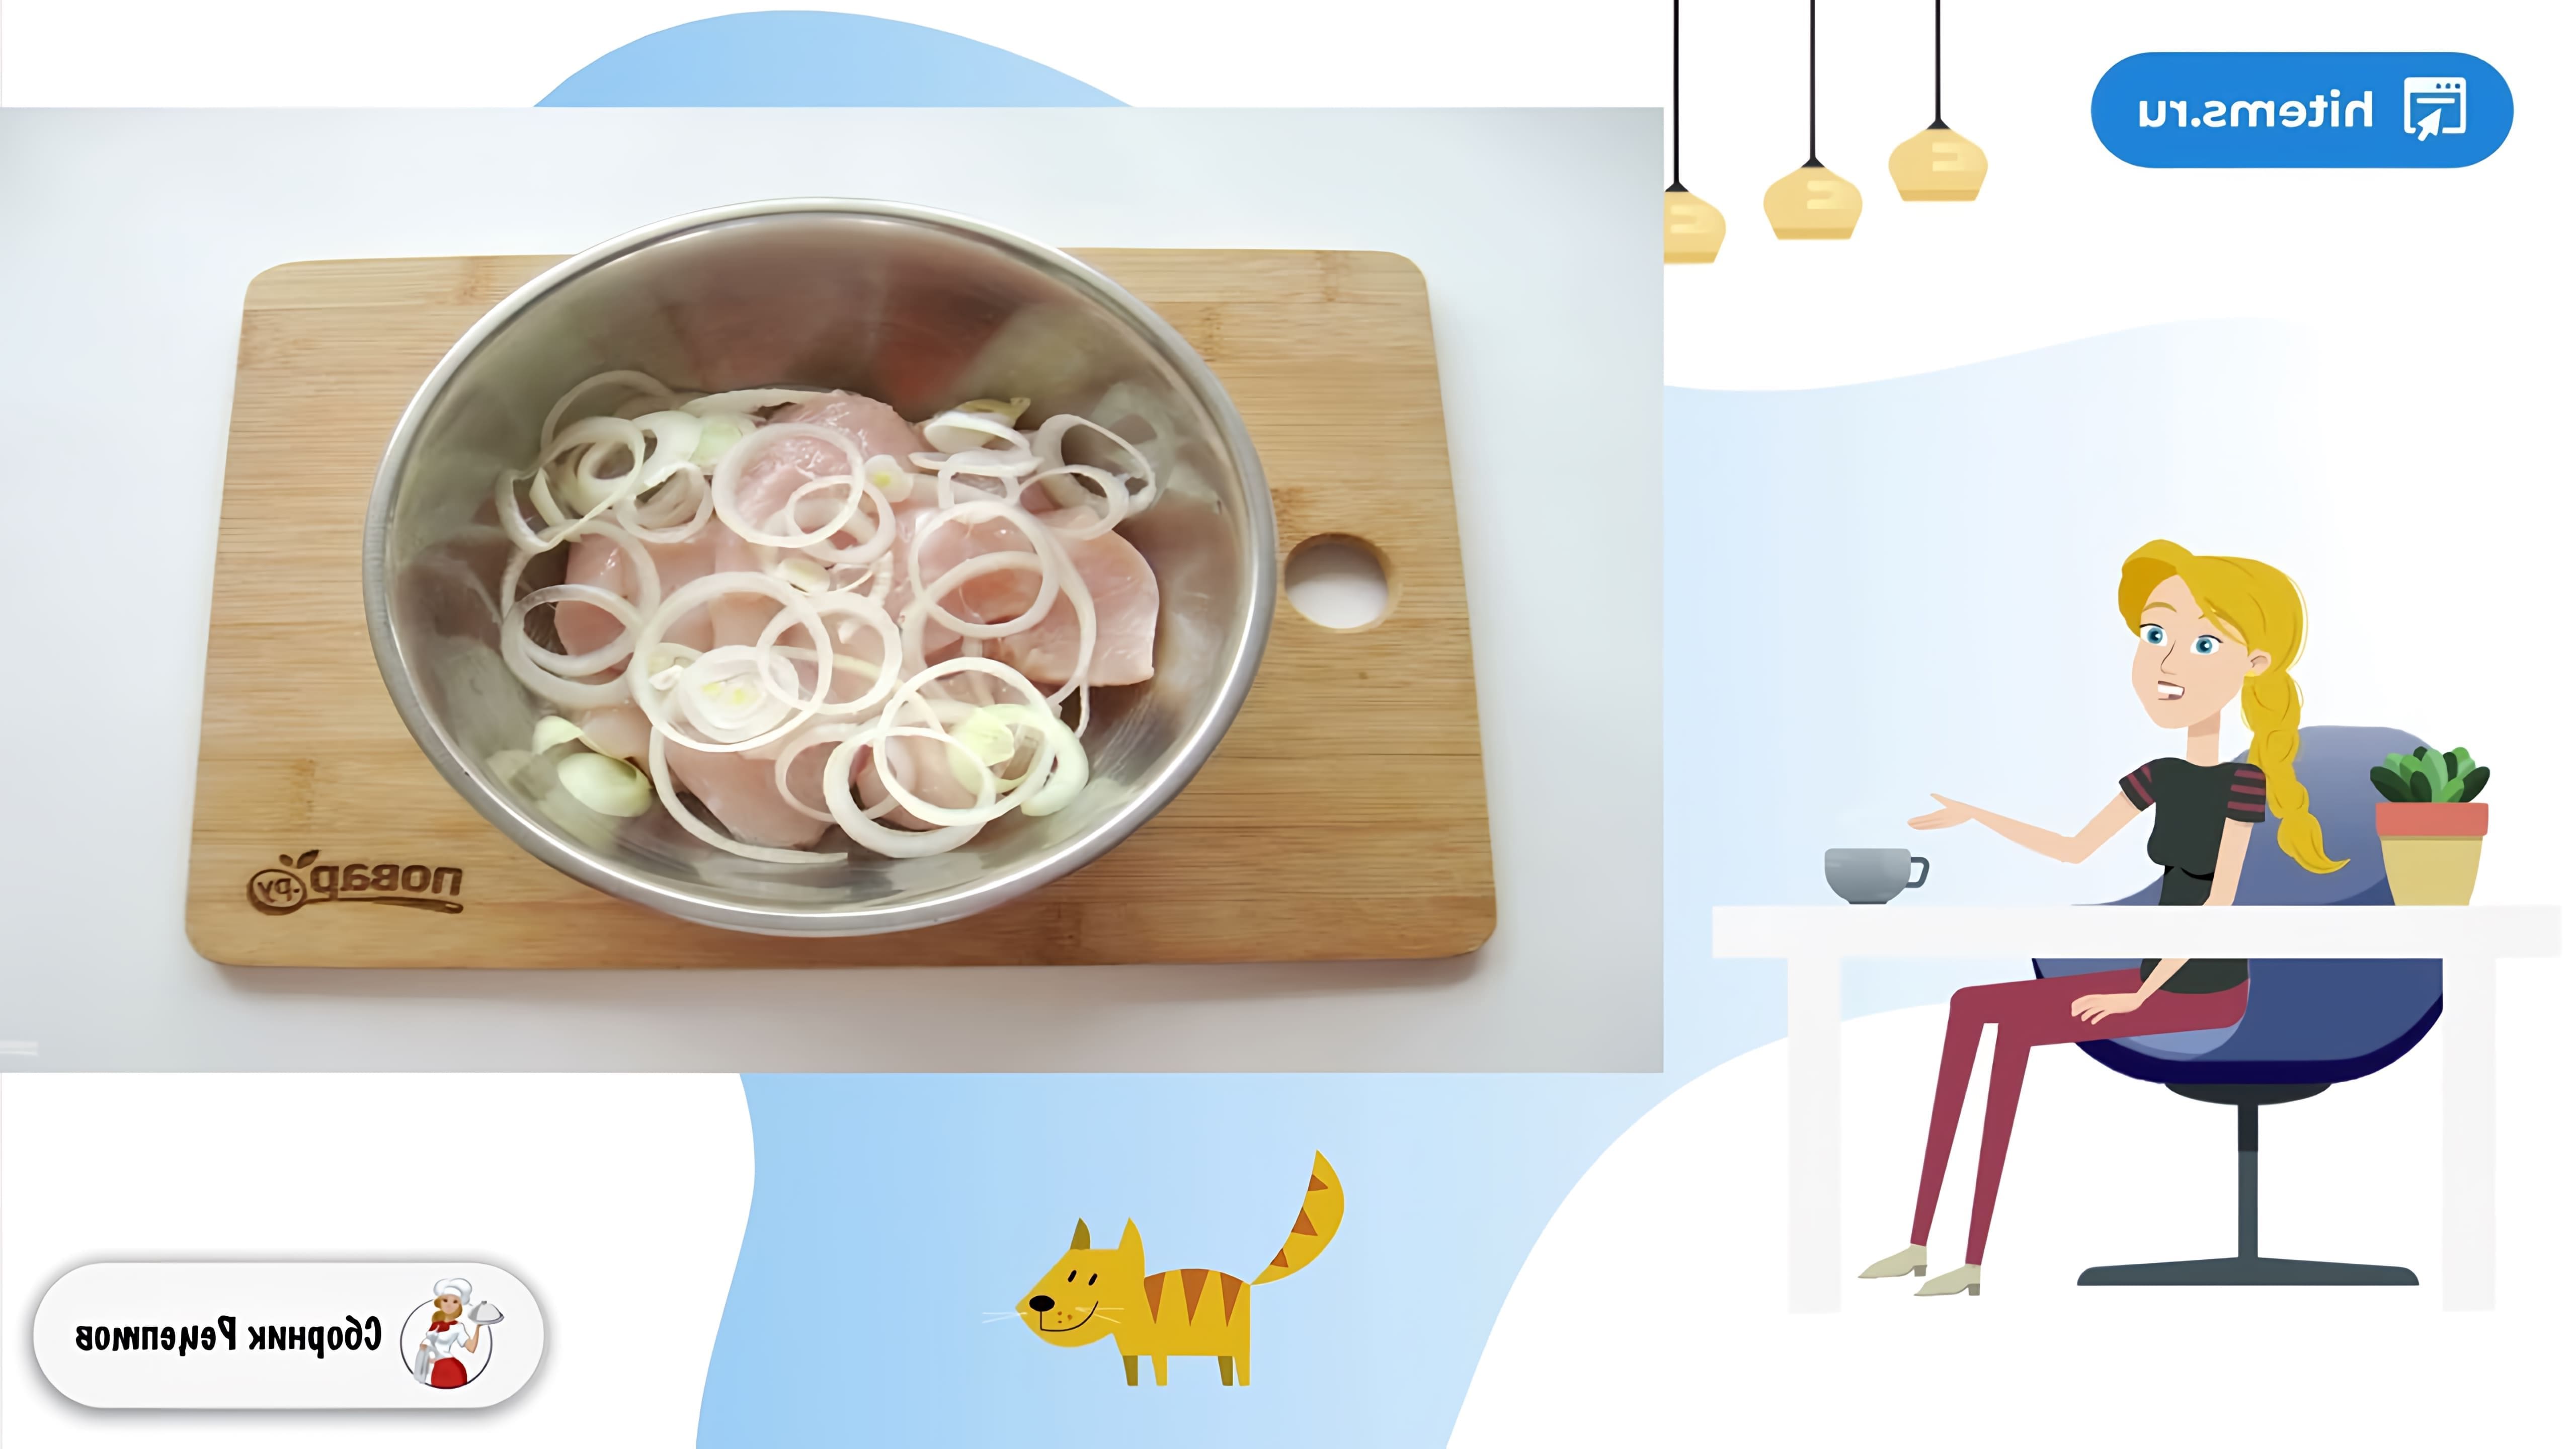 В этом видео демонстрируется рецепт приготовления шашлыка на решетке в духовке